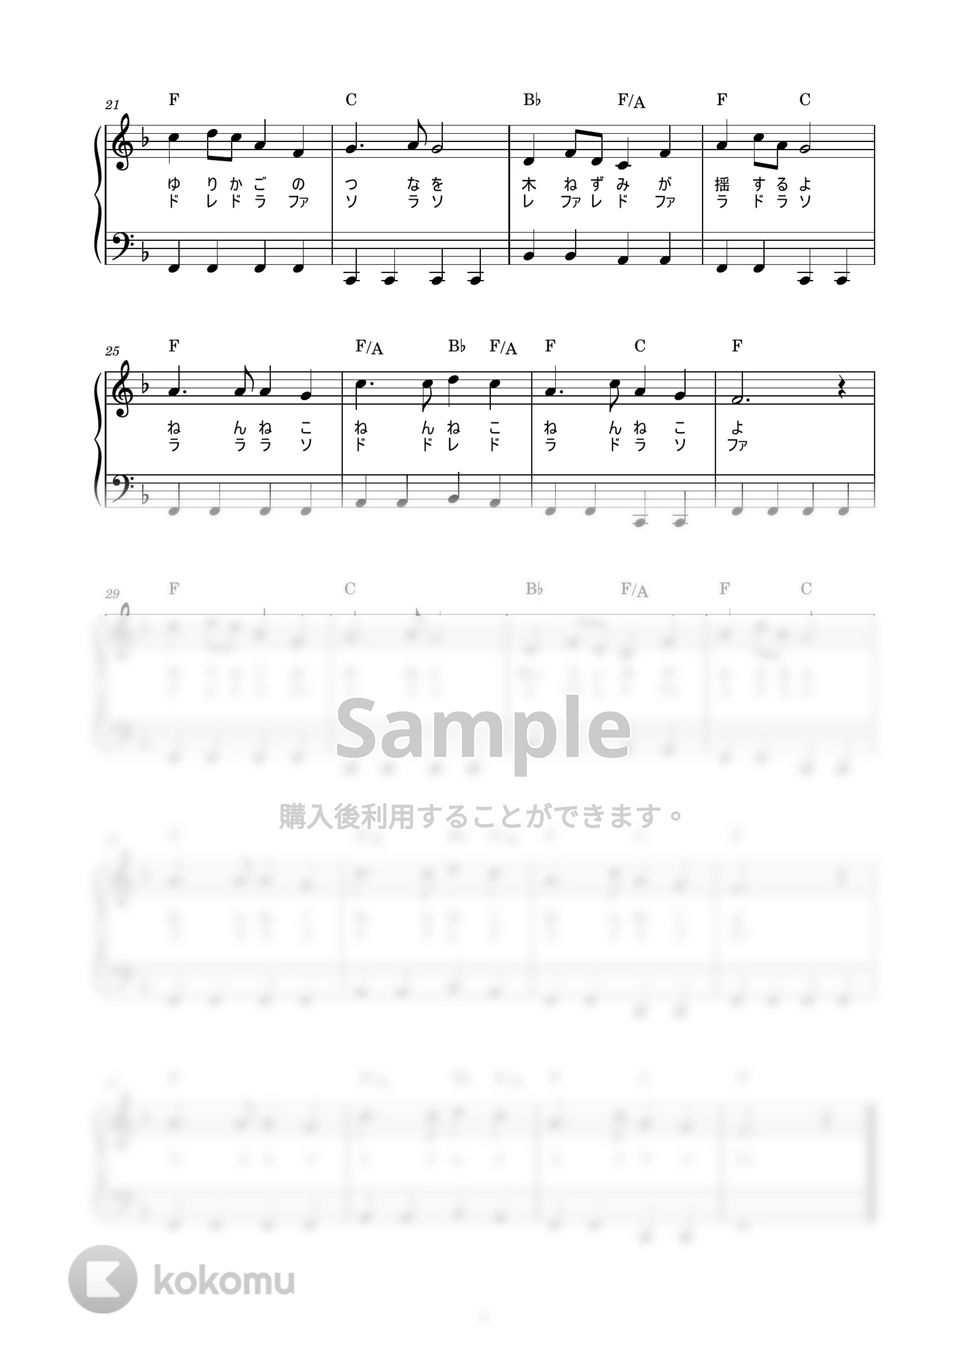 ゆりかごのうた (かんたん / 歌詞付き / ドレミ付き / 初心者) by piano.tokyo